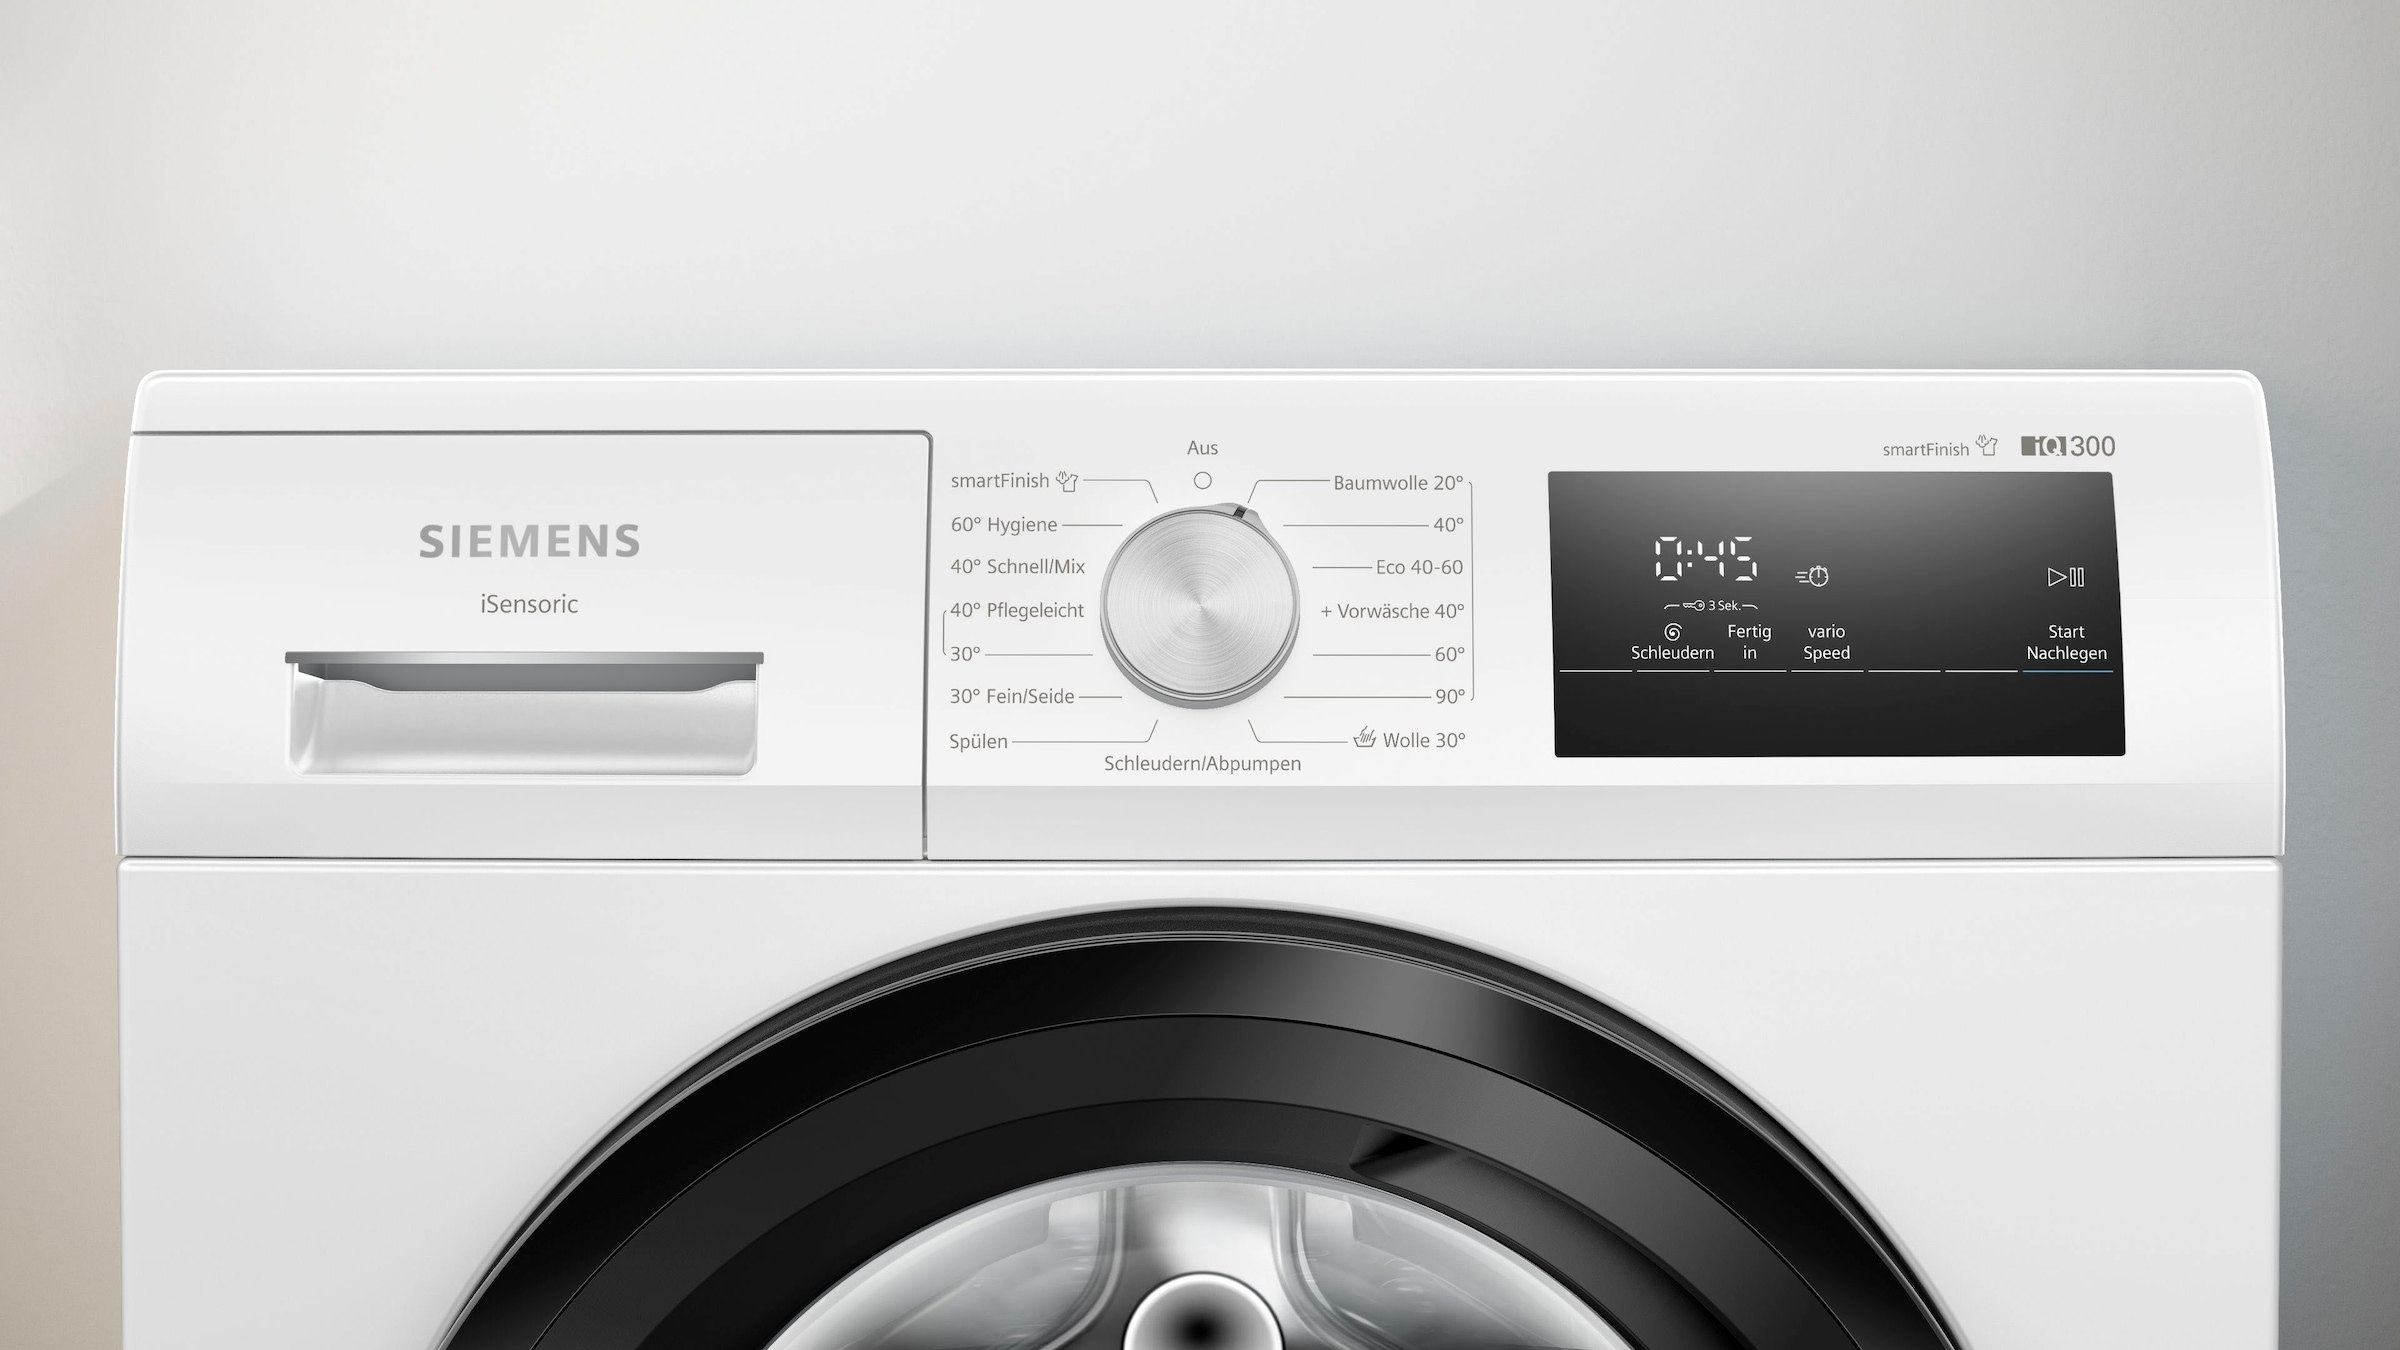 SIEMENS Waschmaschine »WM14N001«, iQ300, WM14N001, Jahren mit 1400 8 kg, U/min 3 Garantie XXL